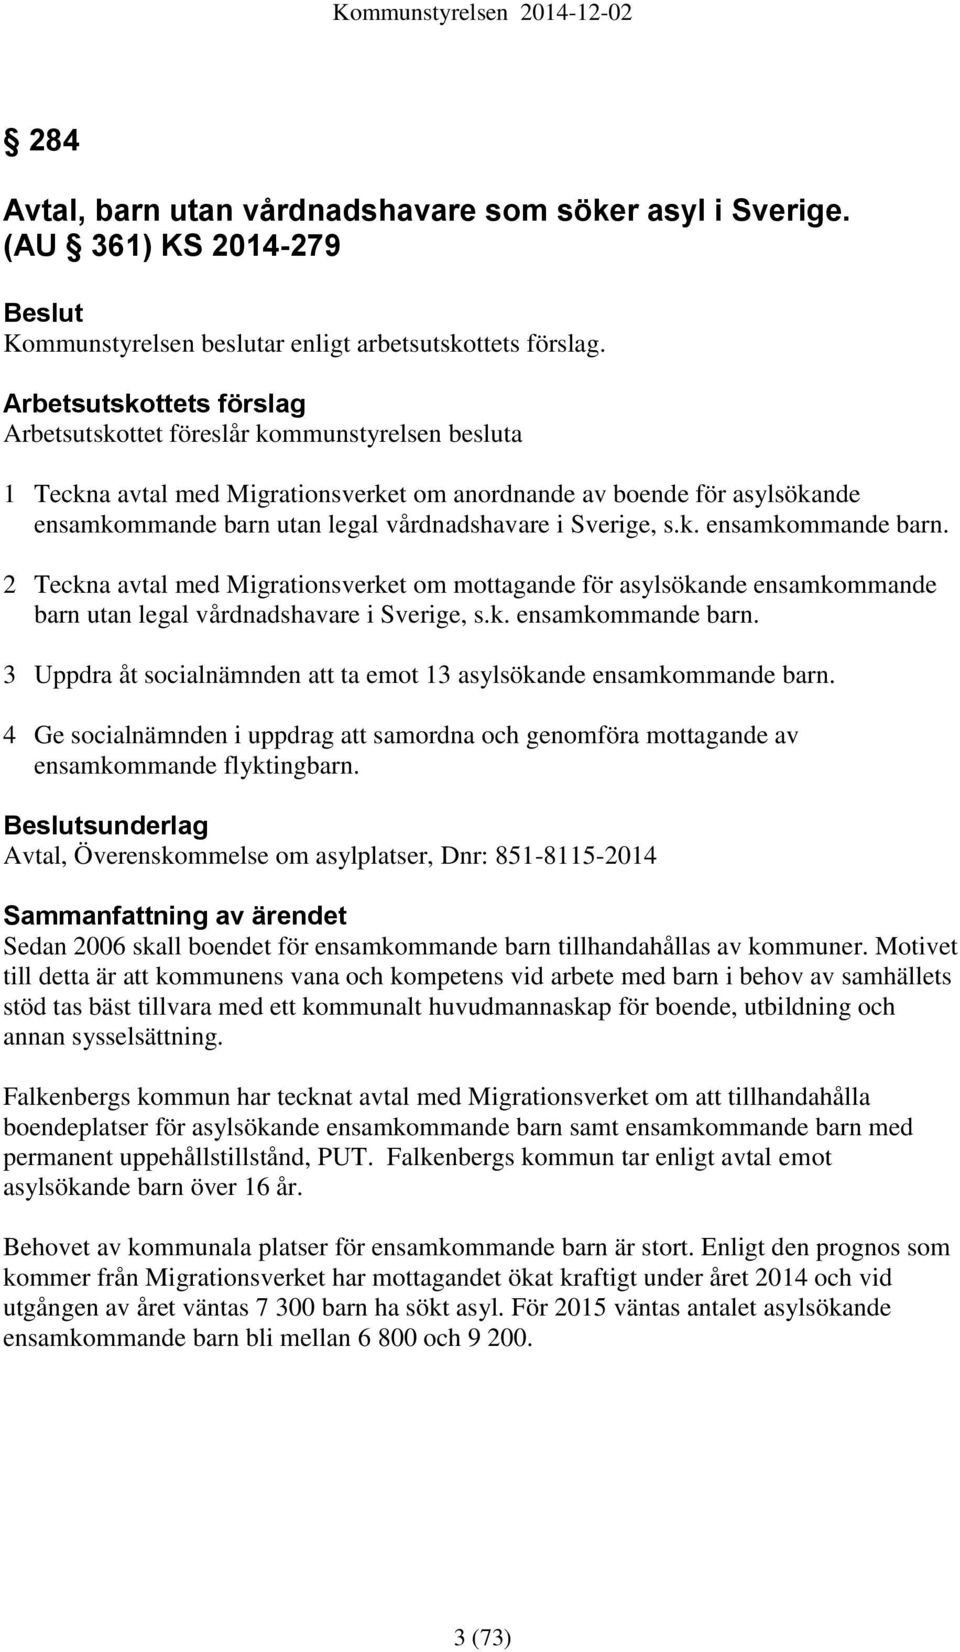 Sverige, s.k. ensamkommande barn. 2 Teckna avtal med Migrationsverket om mottagande för asylsökande ensamkommande barn utan legal vårdnadshavare i Sverige, s.k. ensamkommande barn. 3 Uppdra åt socialnämnden att ta emot 13 asylsökande ensamkommande barn.